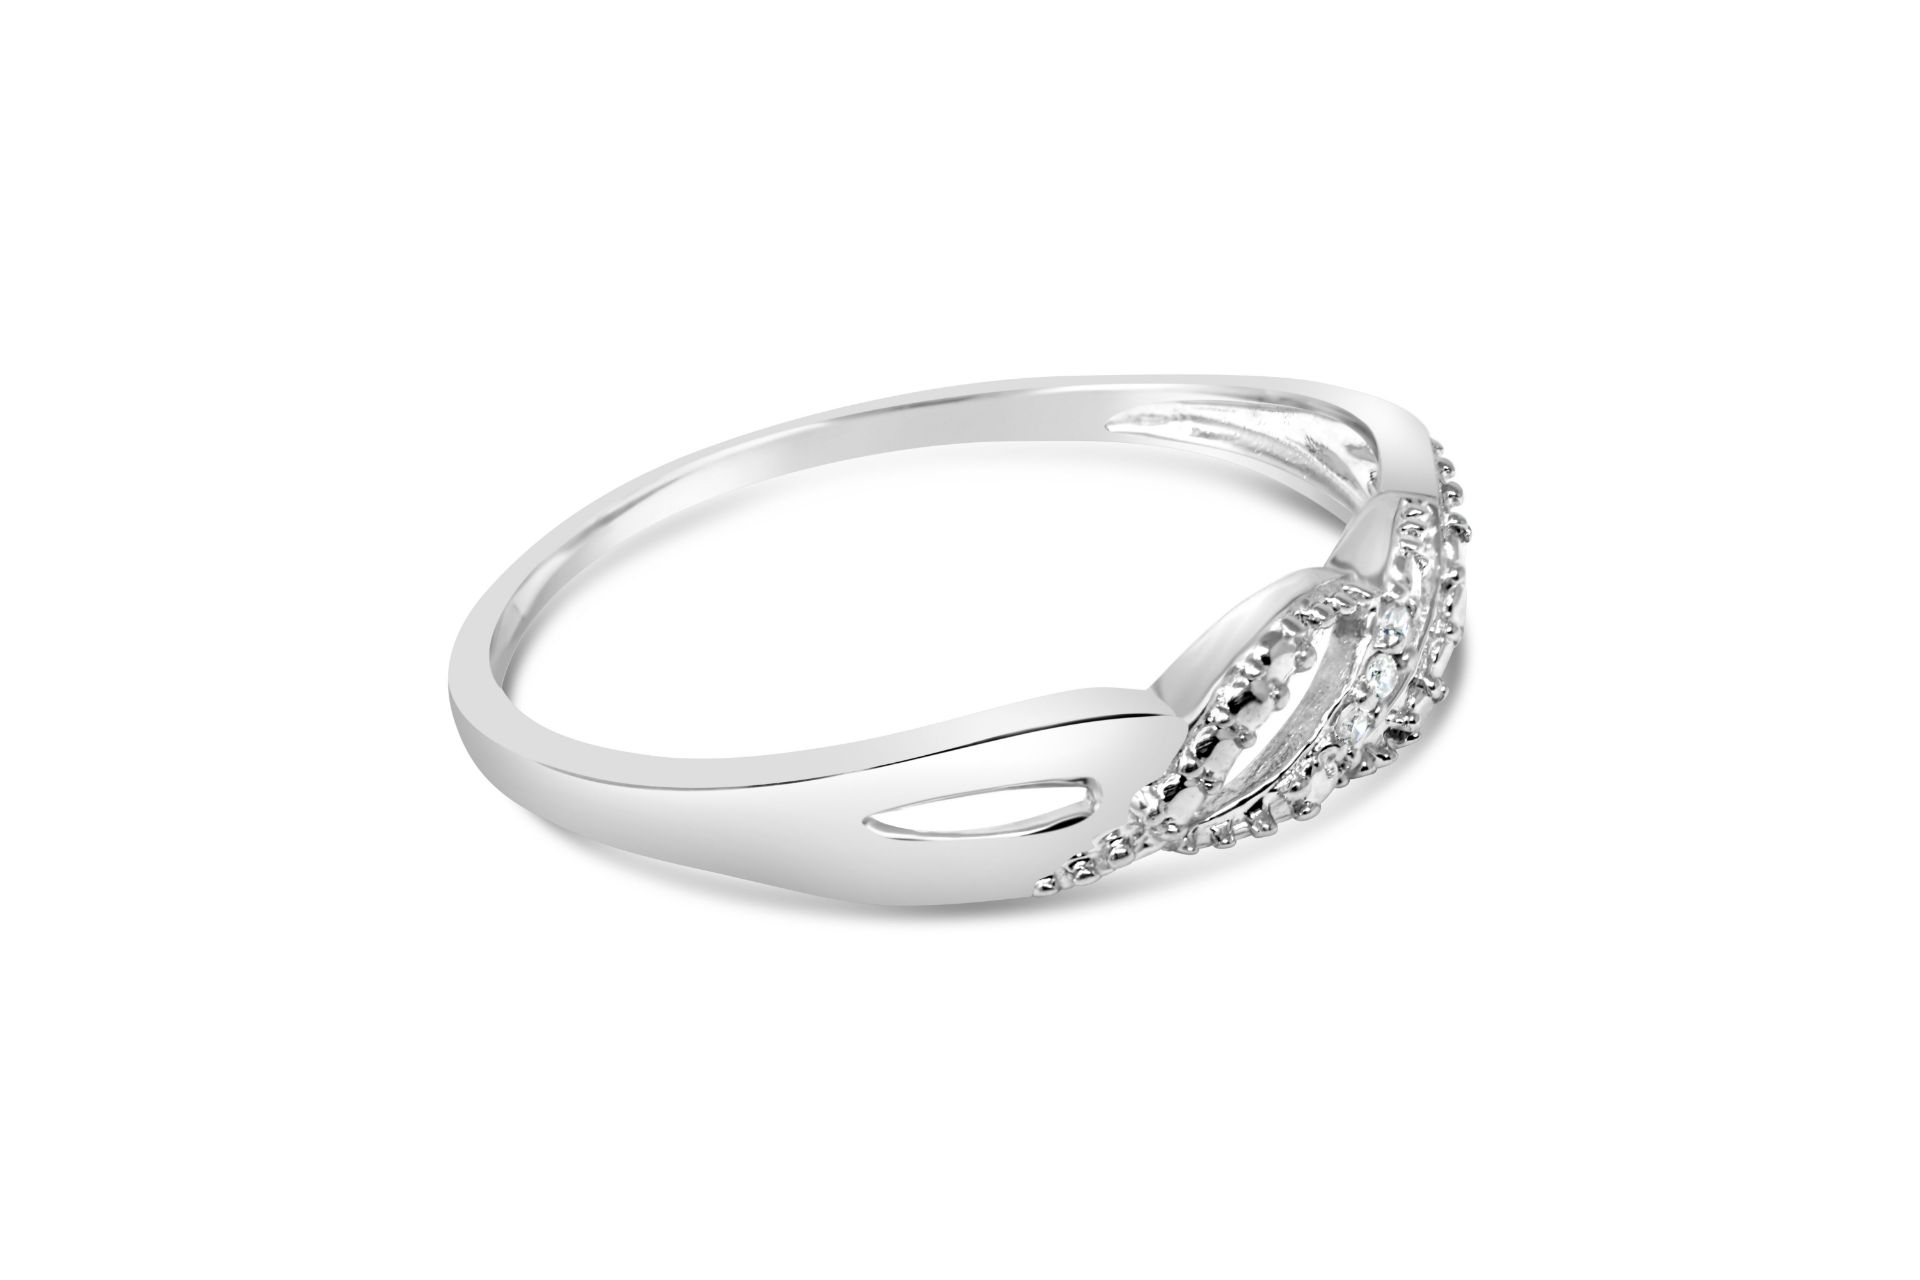 White Gold Diamond Ring, Metal 9K White Gold, Weig - Image 2 of 2